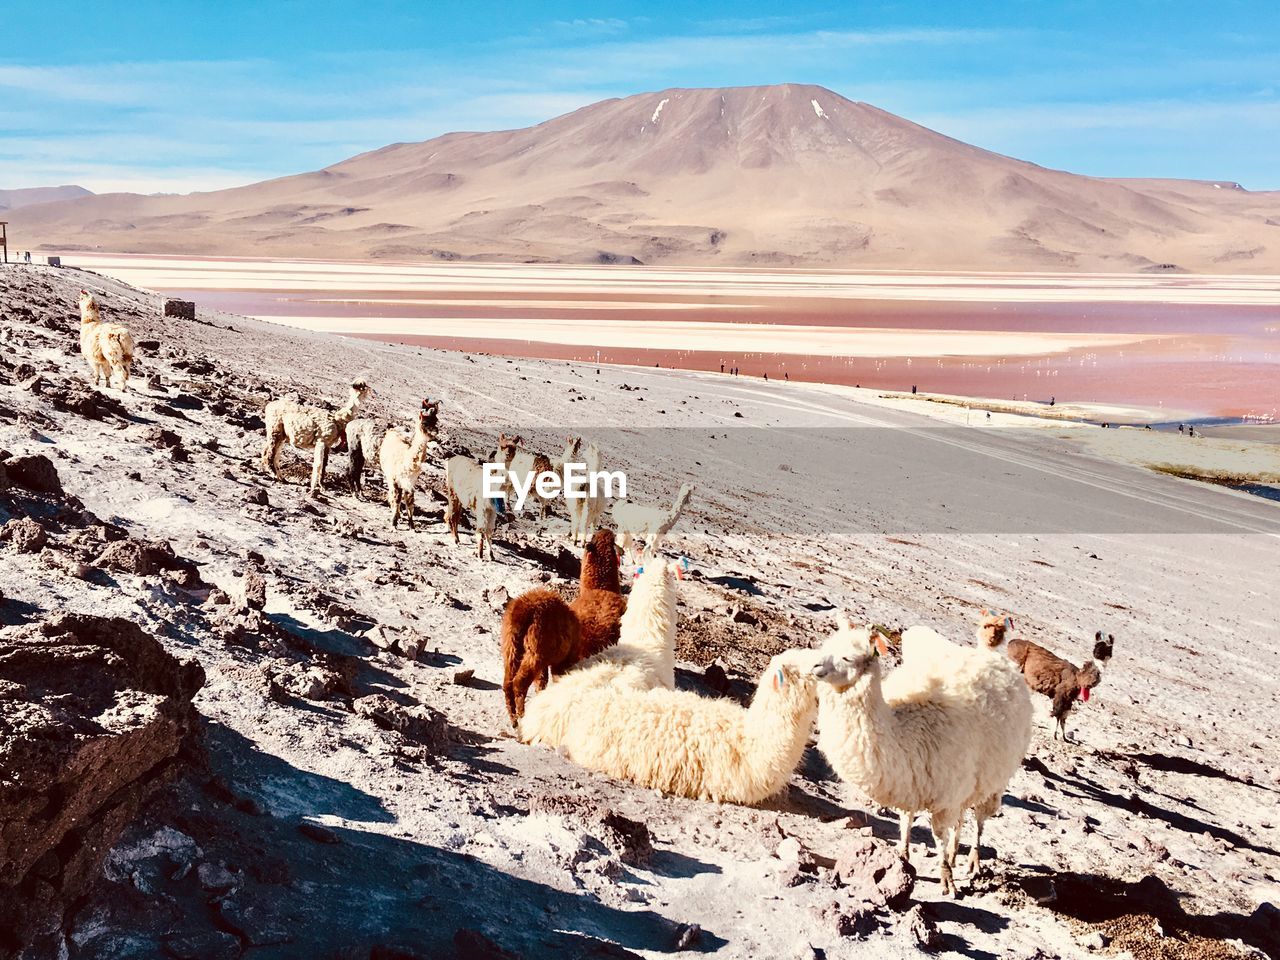 CAMELS IN A DESERT